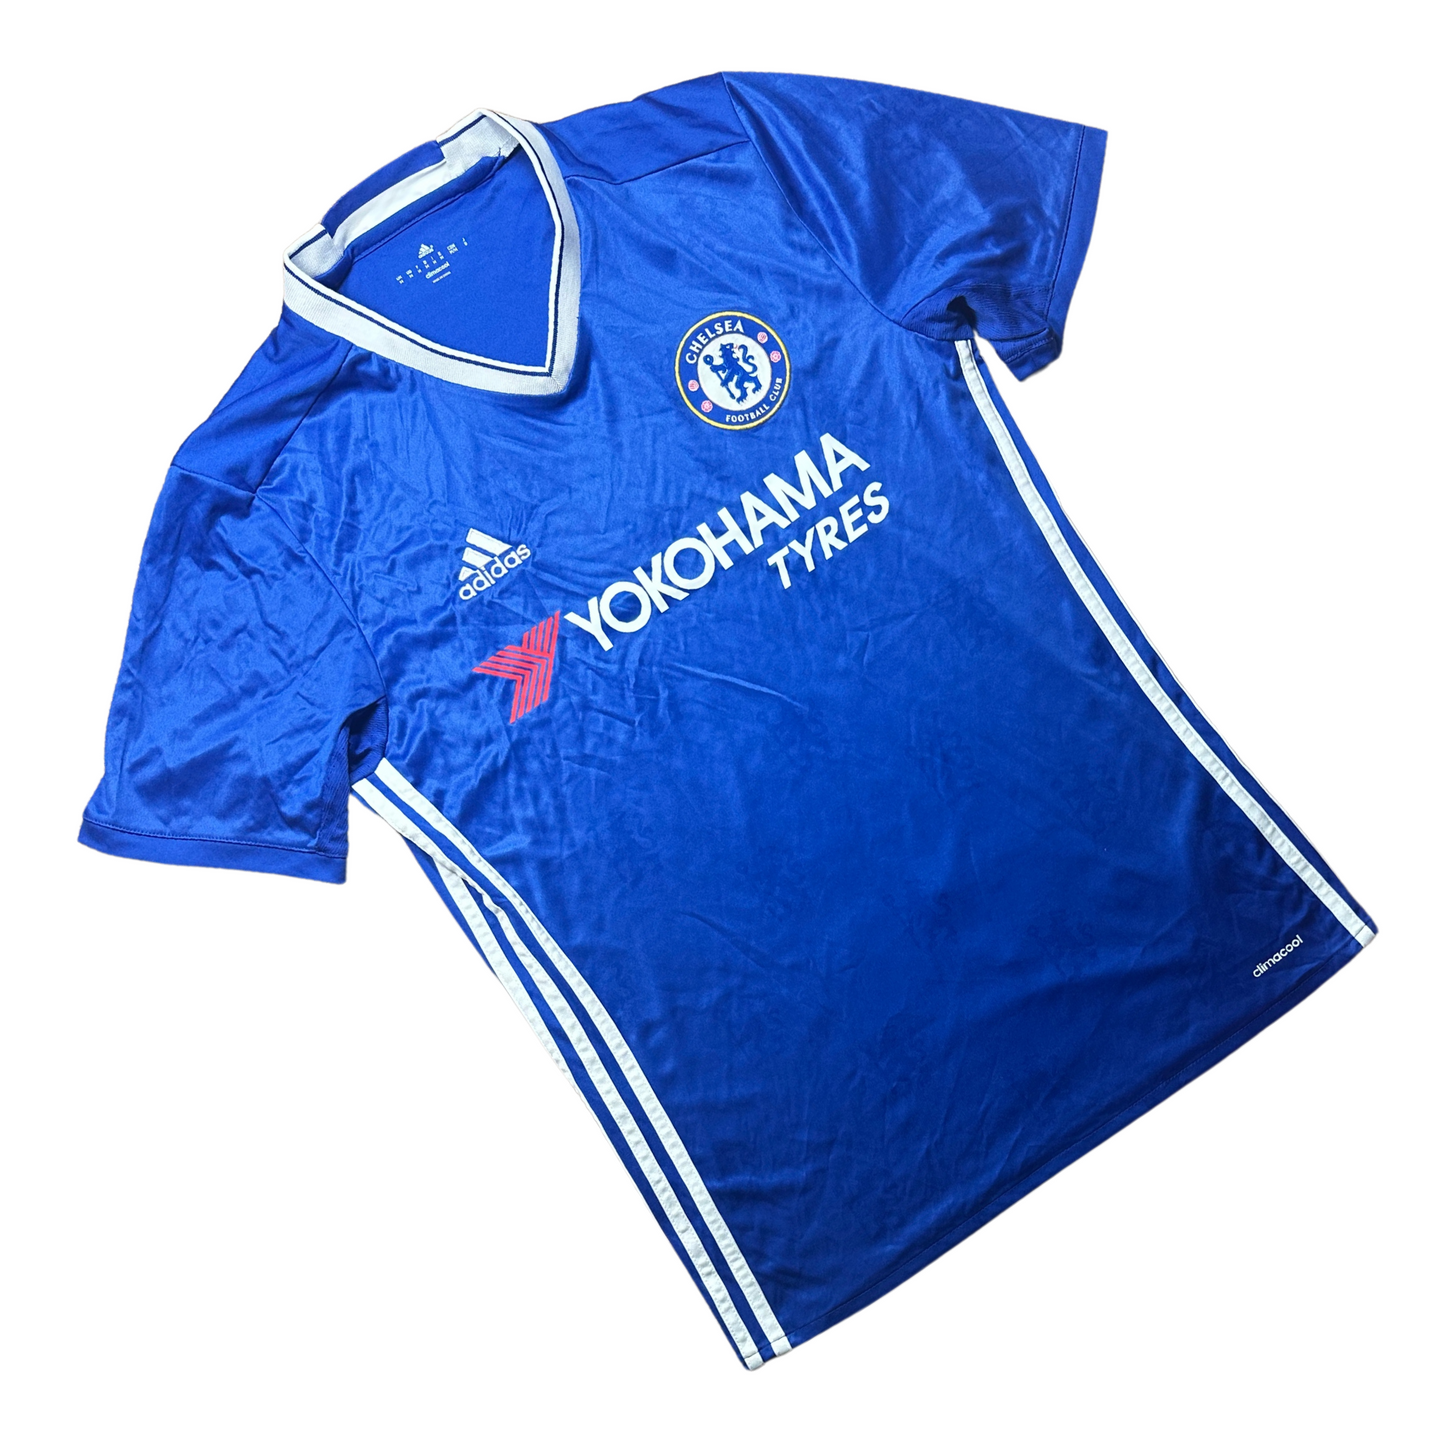 Chelsea 2016/2017 Home Football Shirt